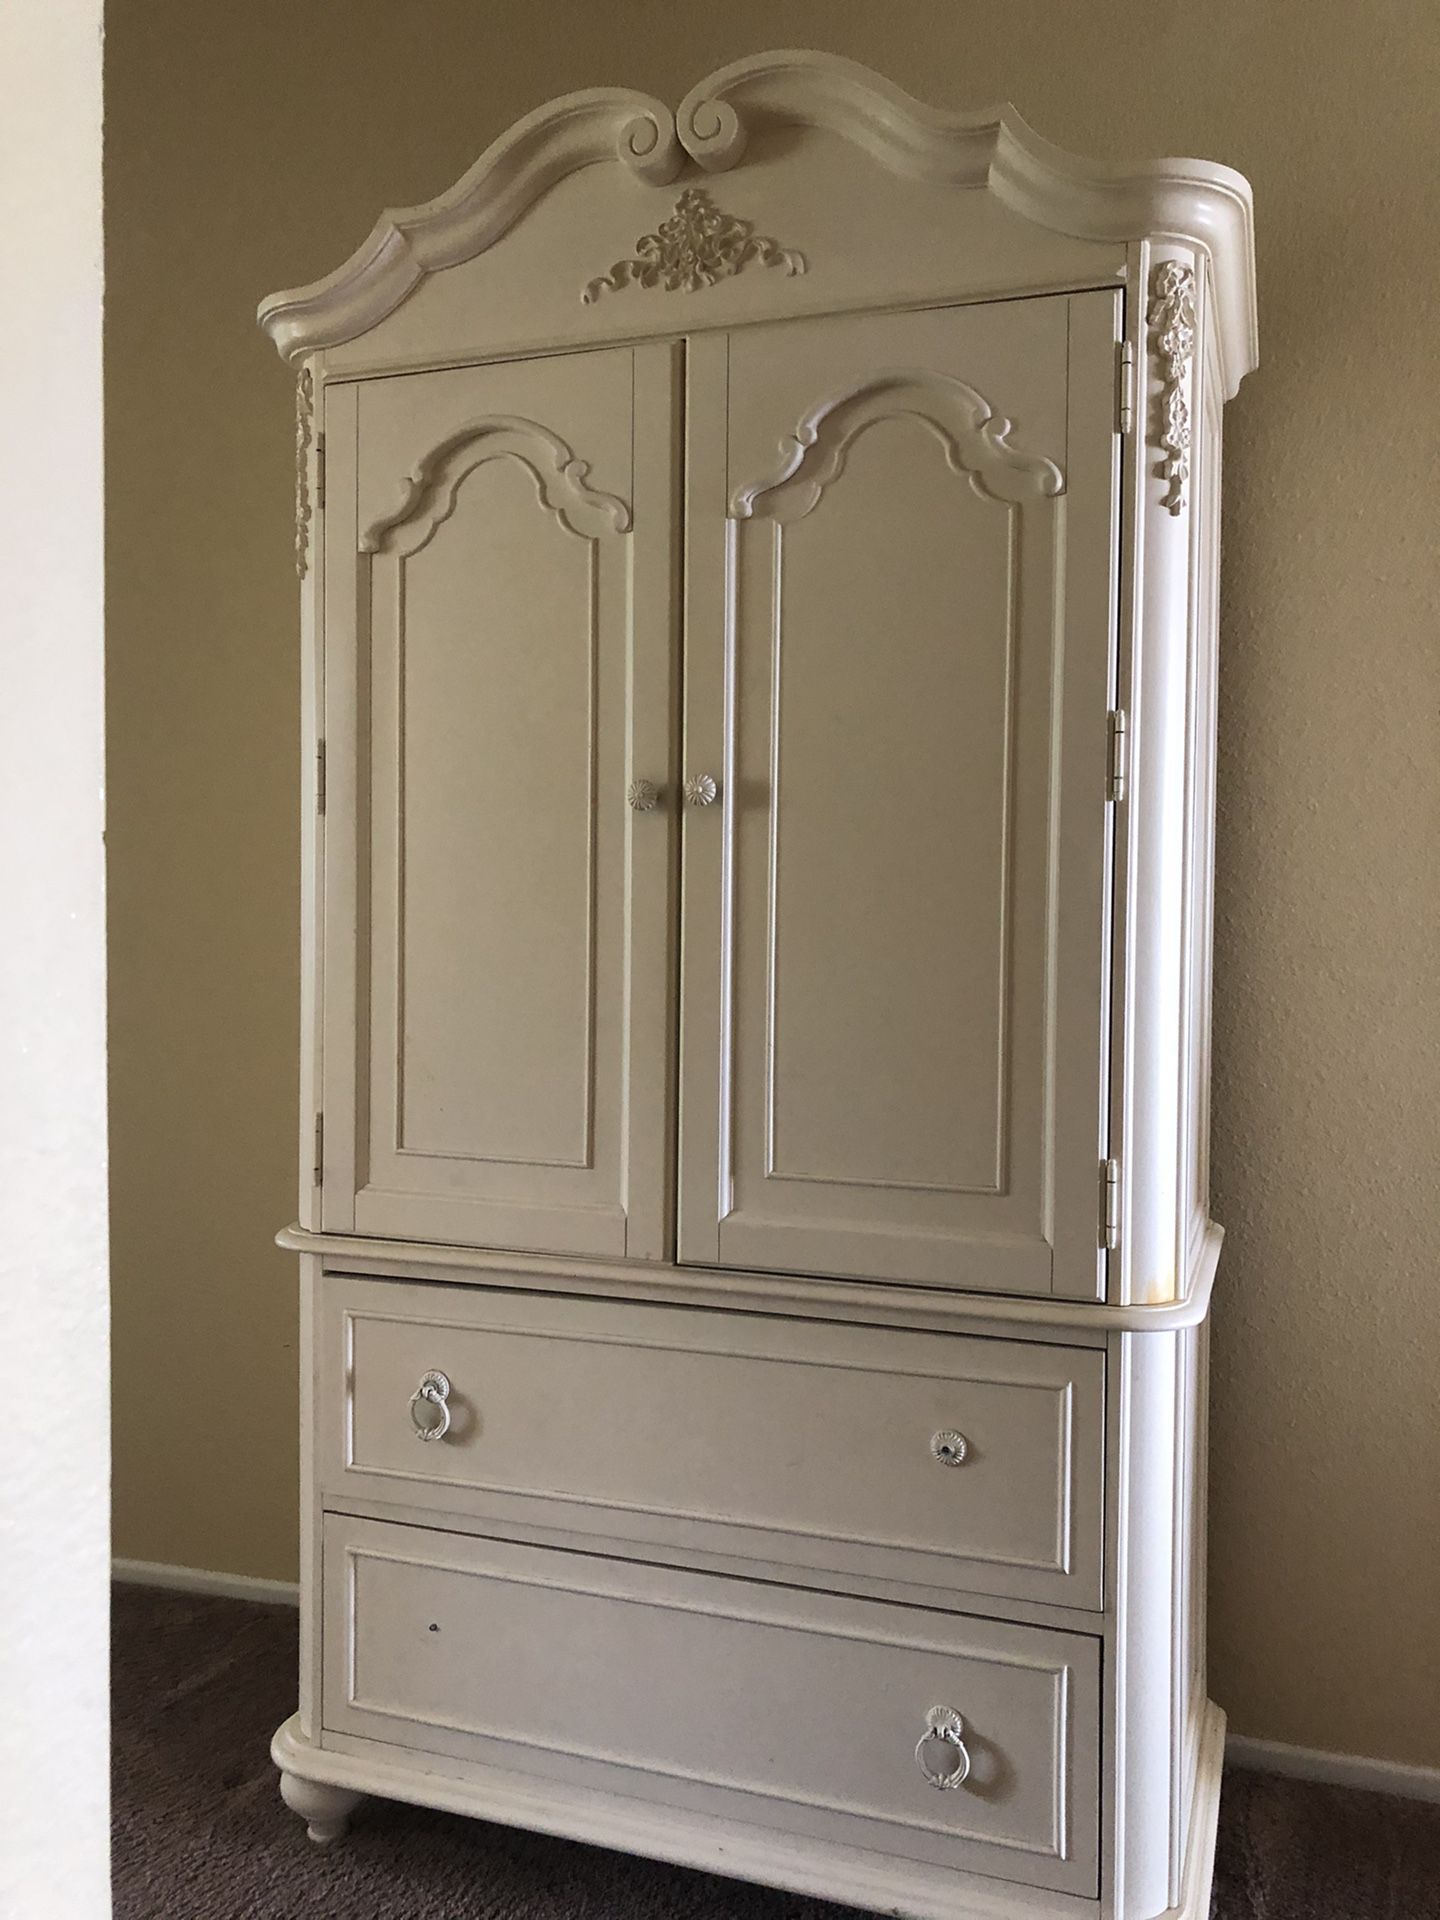 Gorgeous white armoire/media cabinet